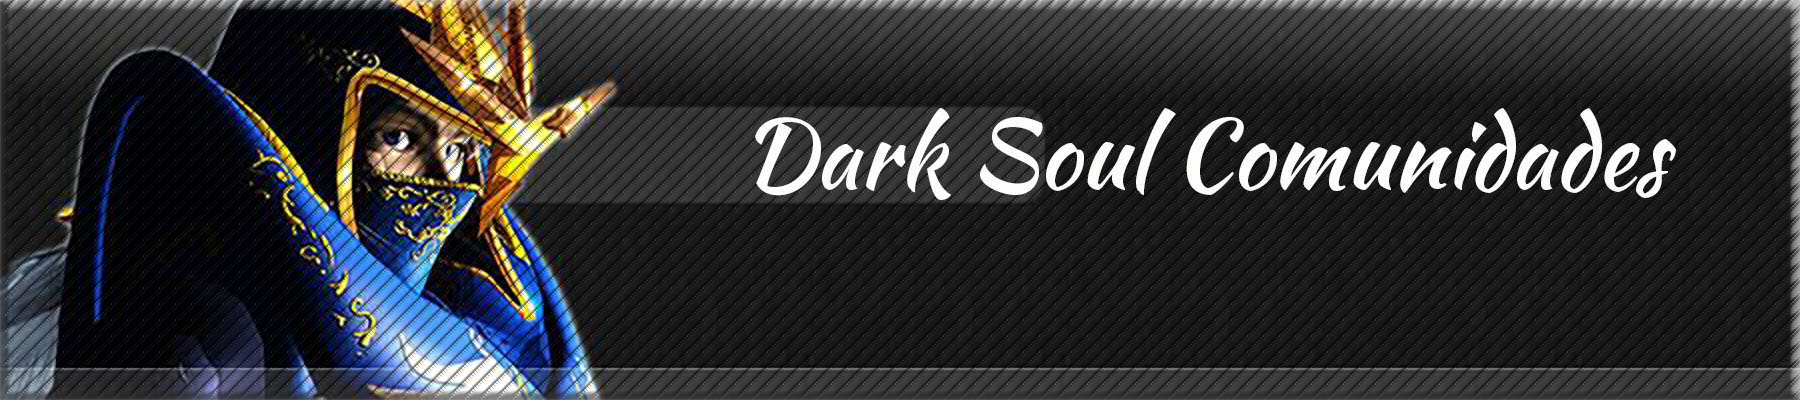 Foro gratis : DARK SOUL COMUNIDADES - Portal Banner11